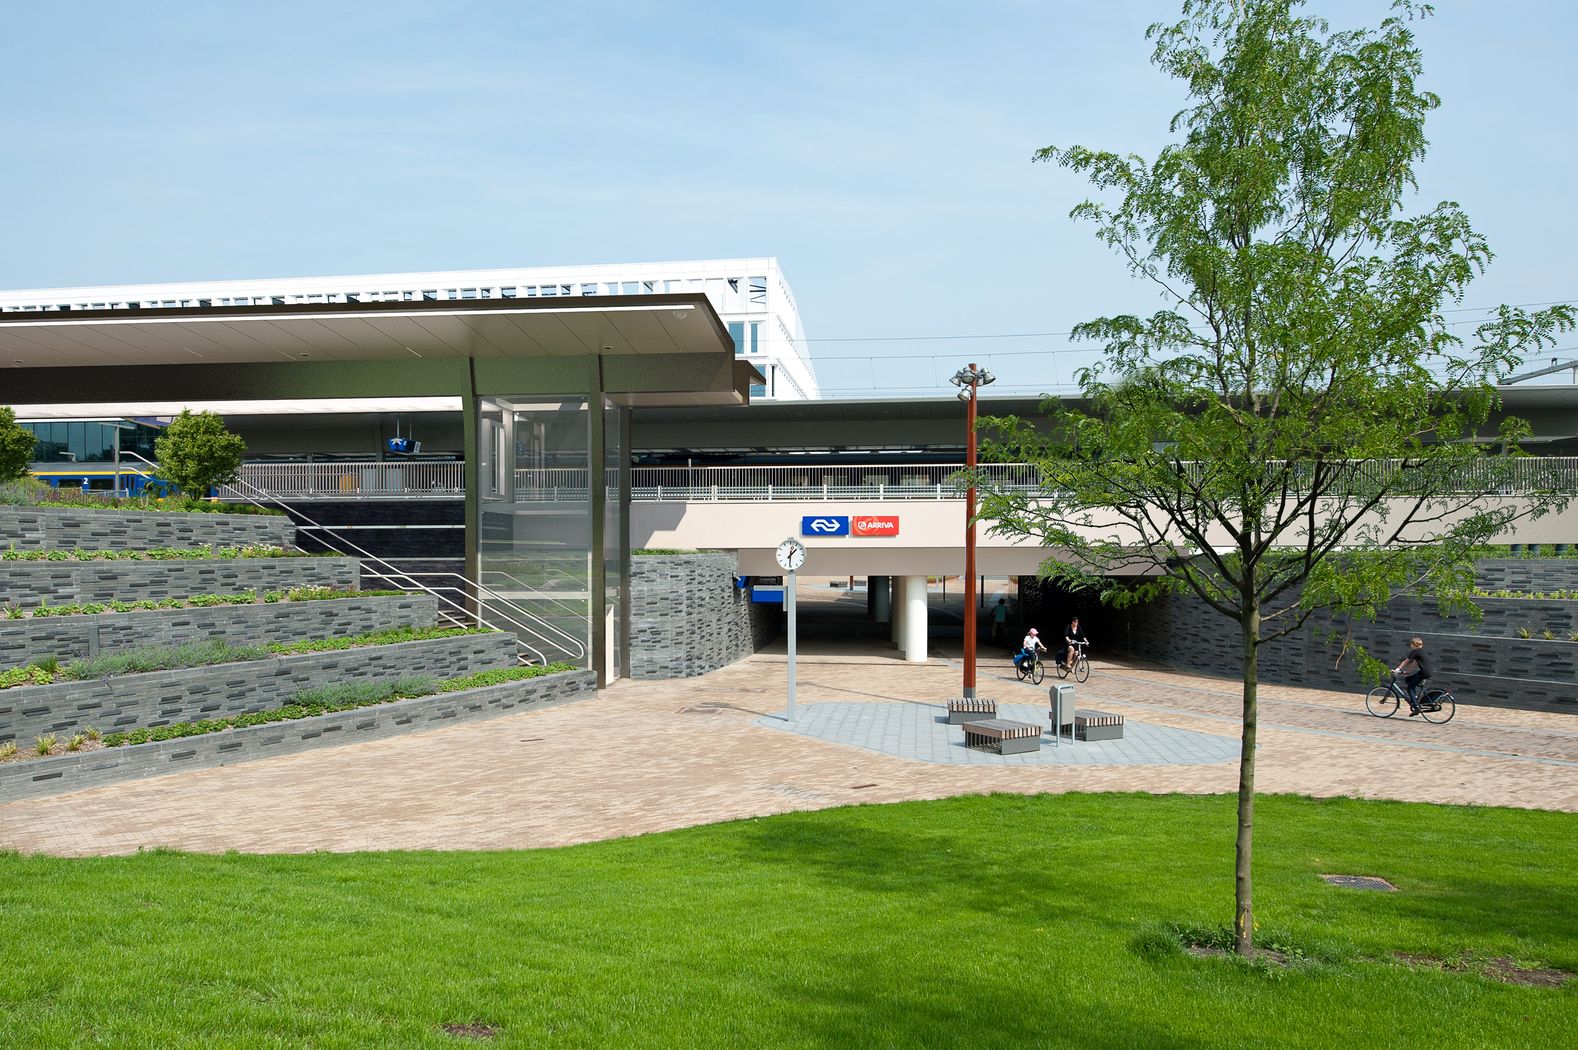 Groningen Europapark snelst groeiende station van Nederland